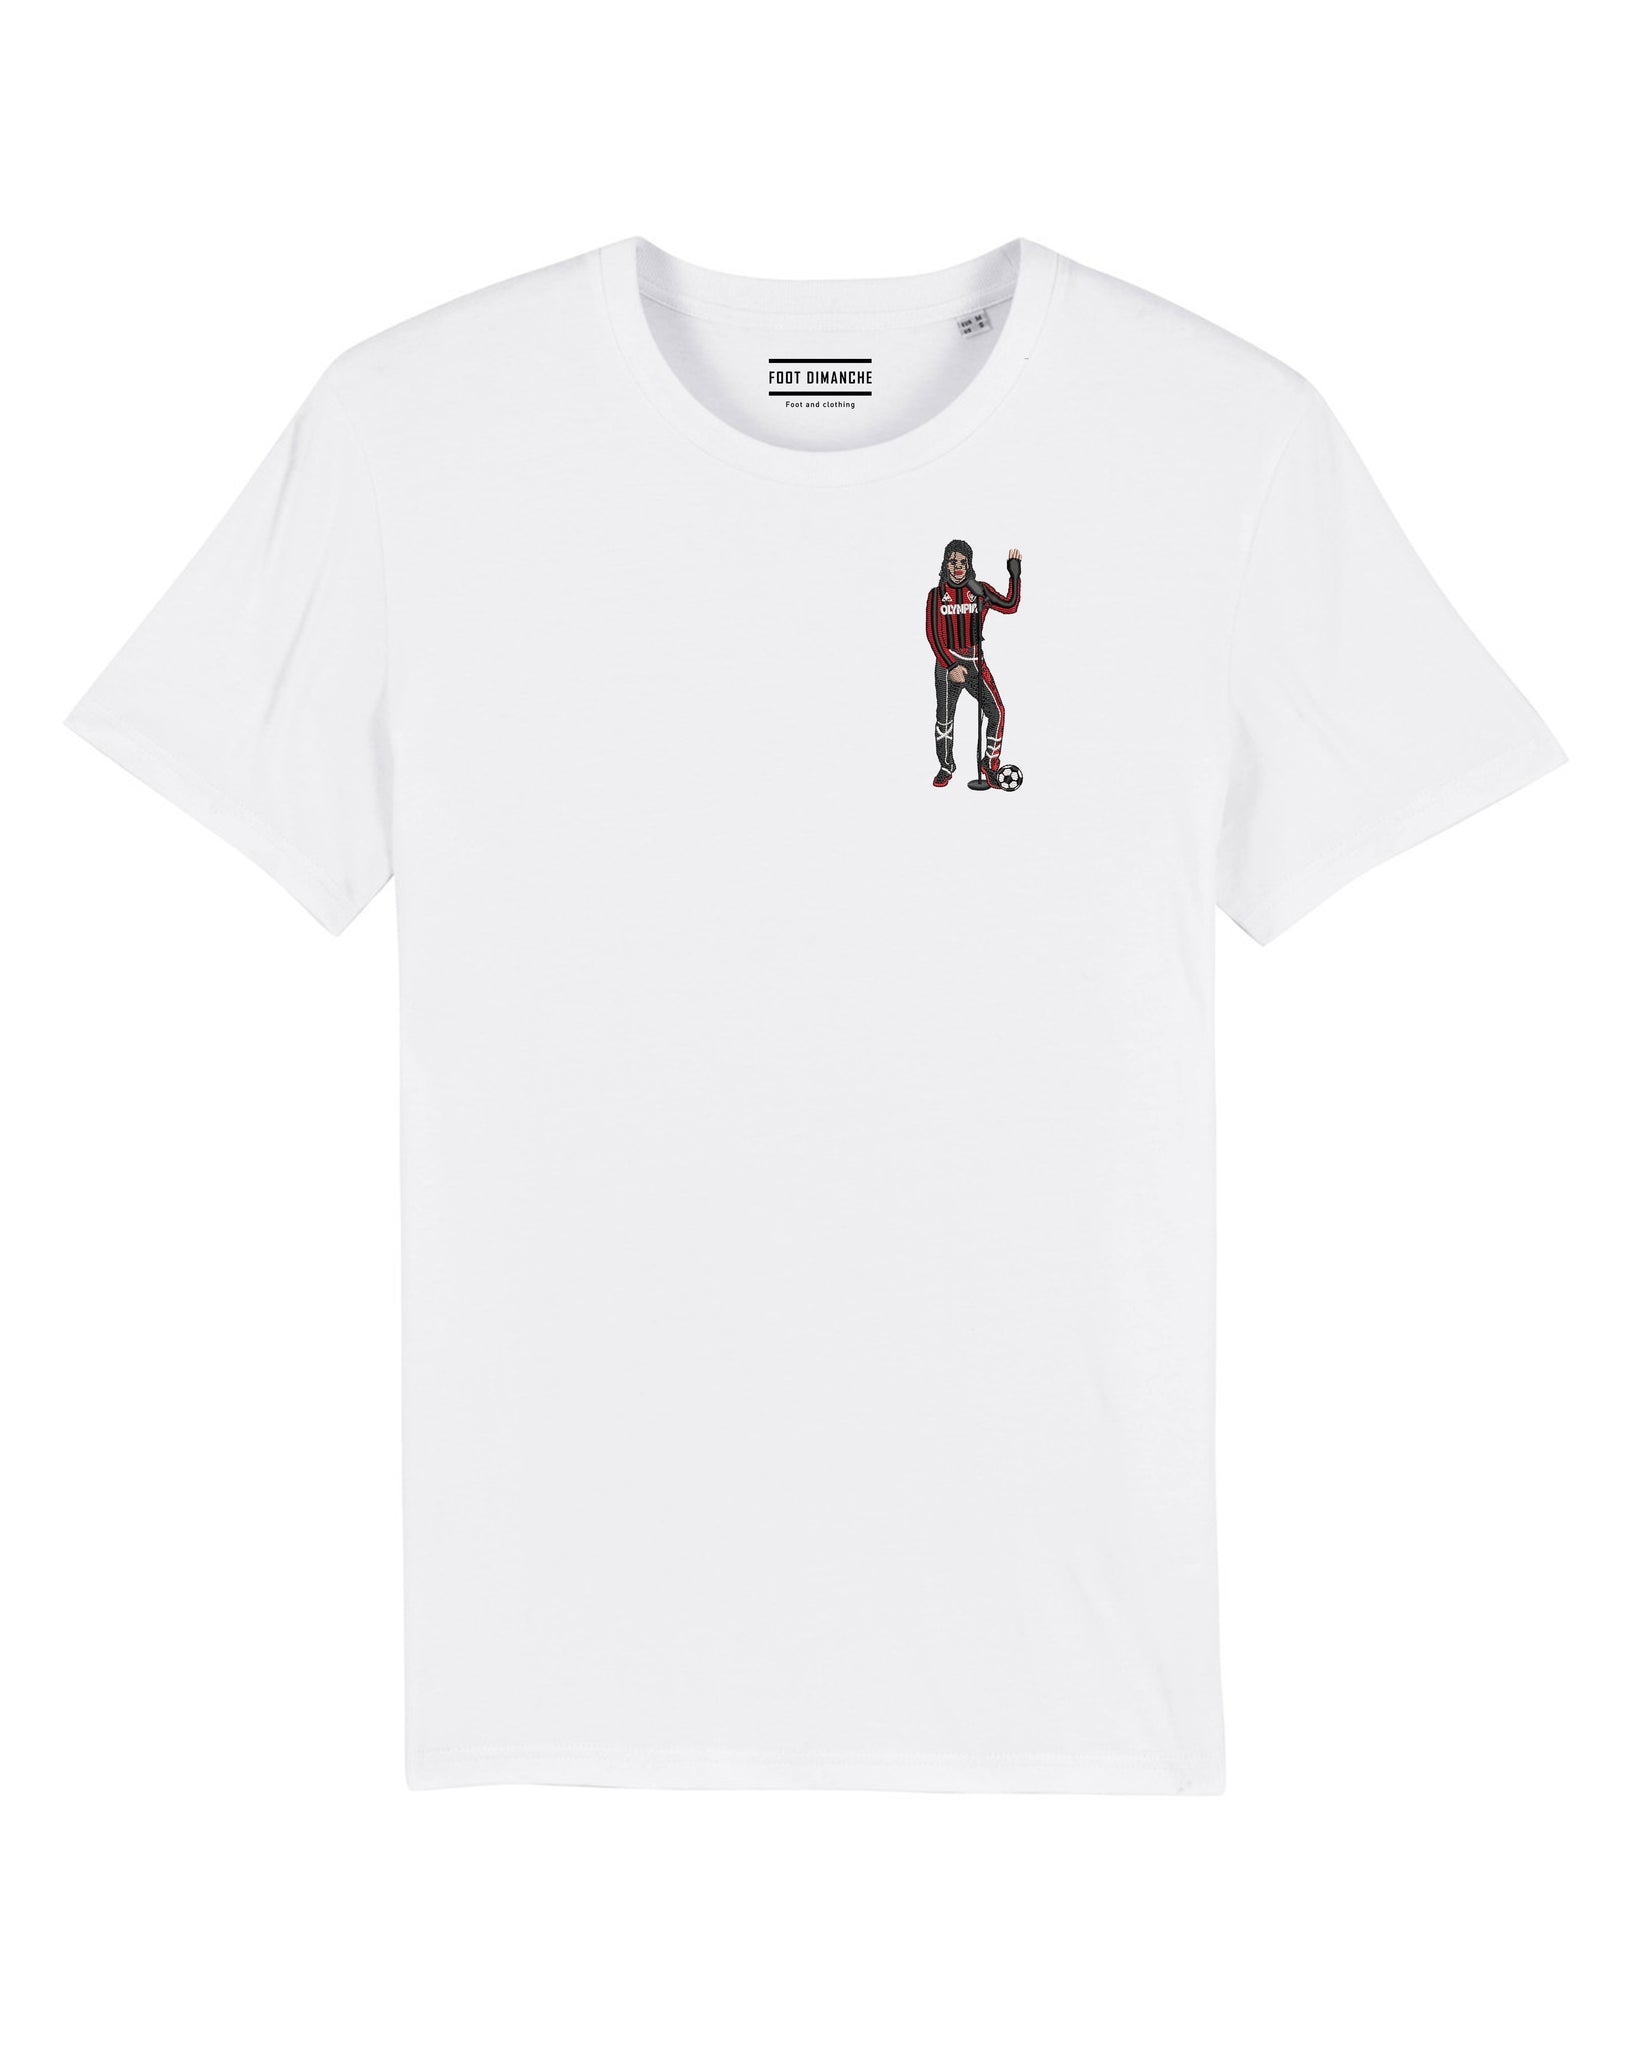 Tee Shirt Michael Jackson